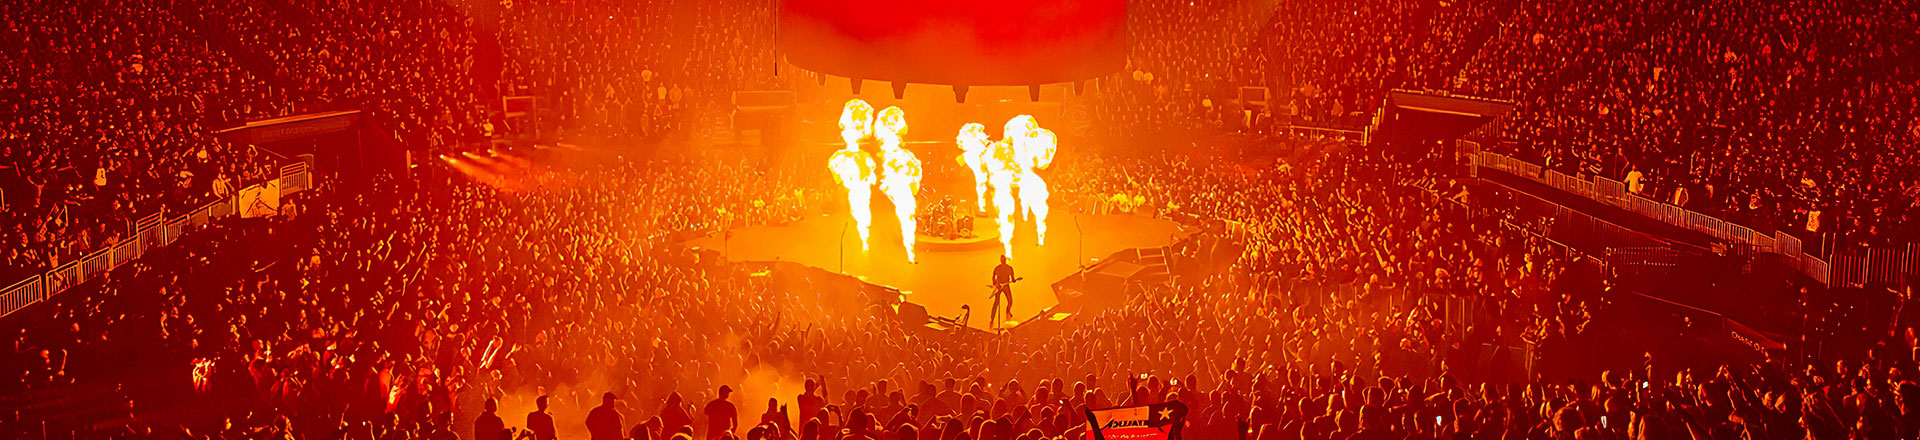 Kontynuacja współpracy Meyer Sound z zespołem Metallica przy nagłośnieniu trasy koncertowej 